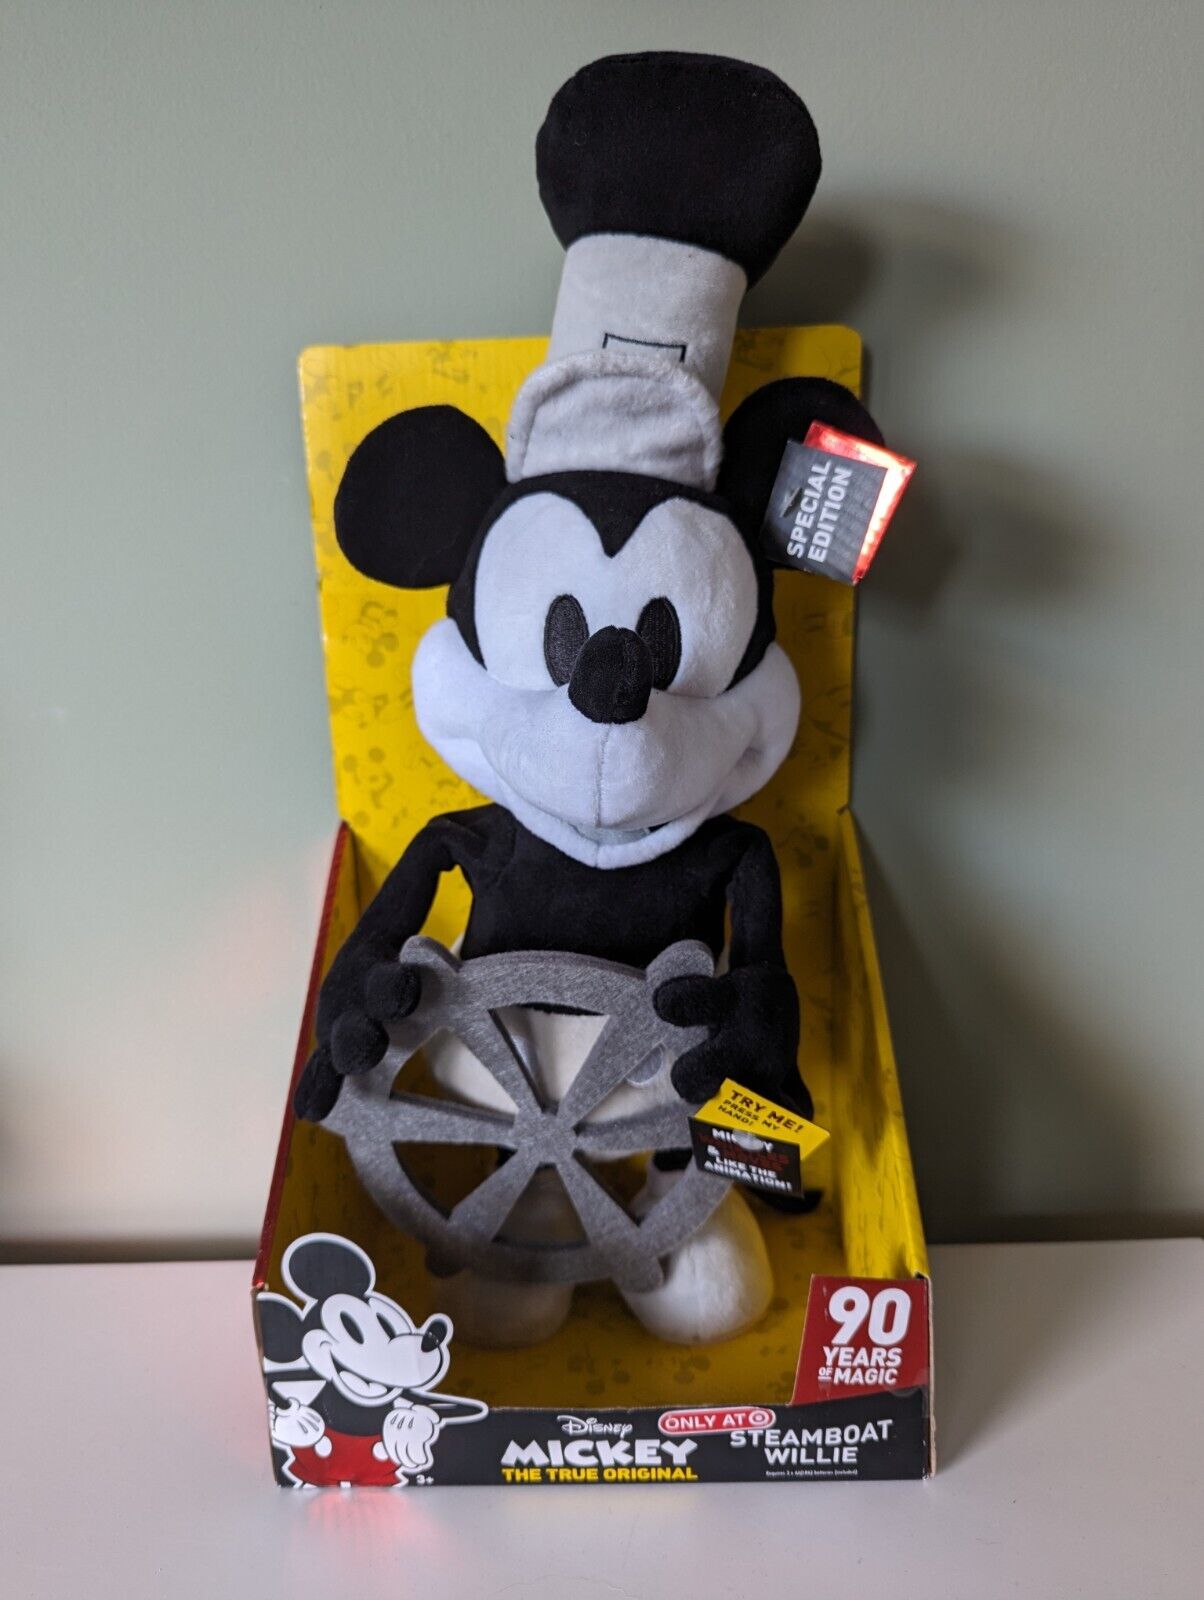 Disney Mickey 90 Years of Magic True Original Steamboat Willie Plush Target box